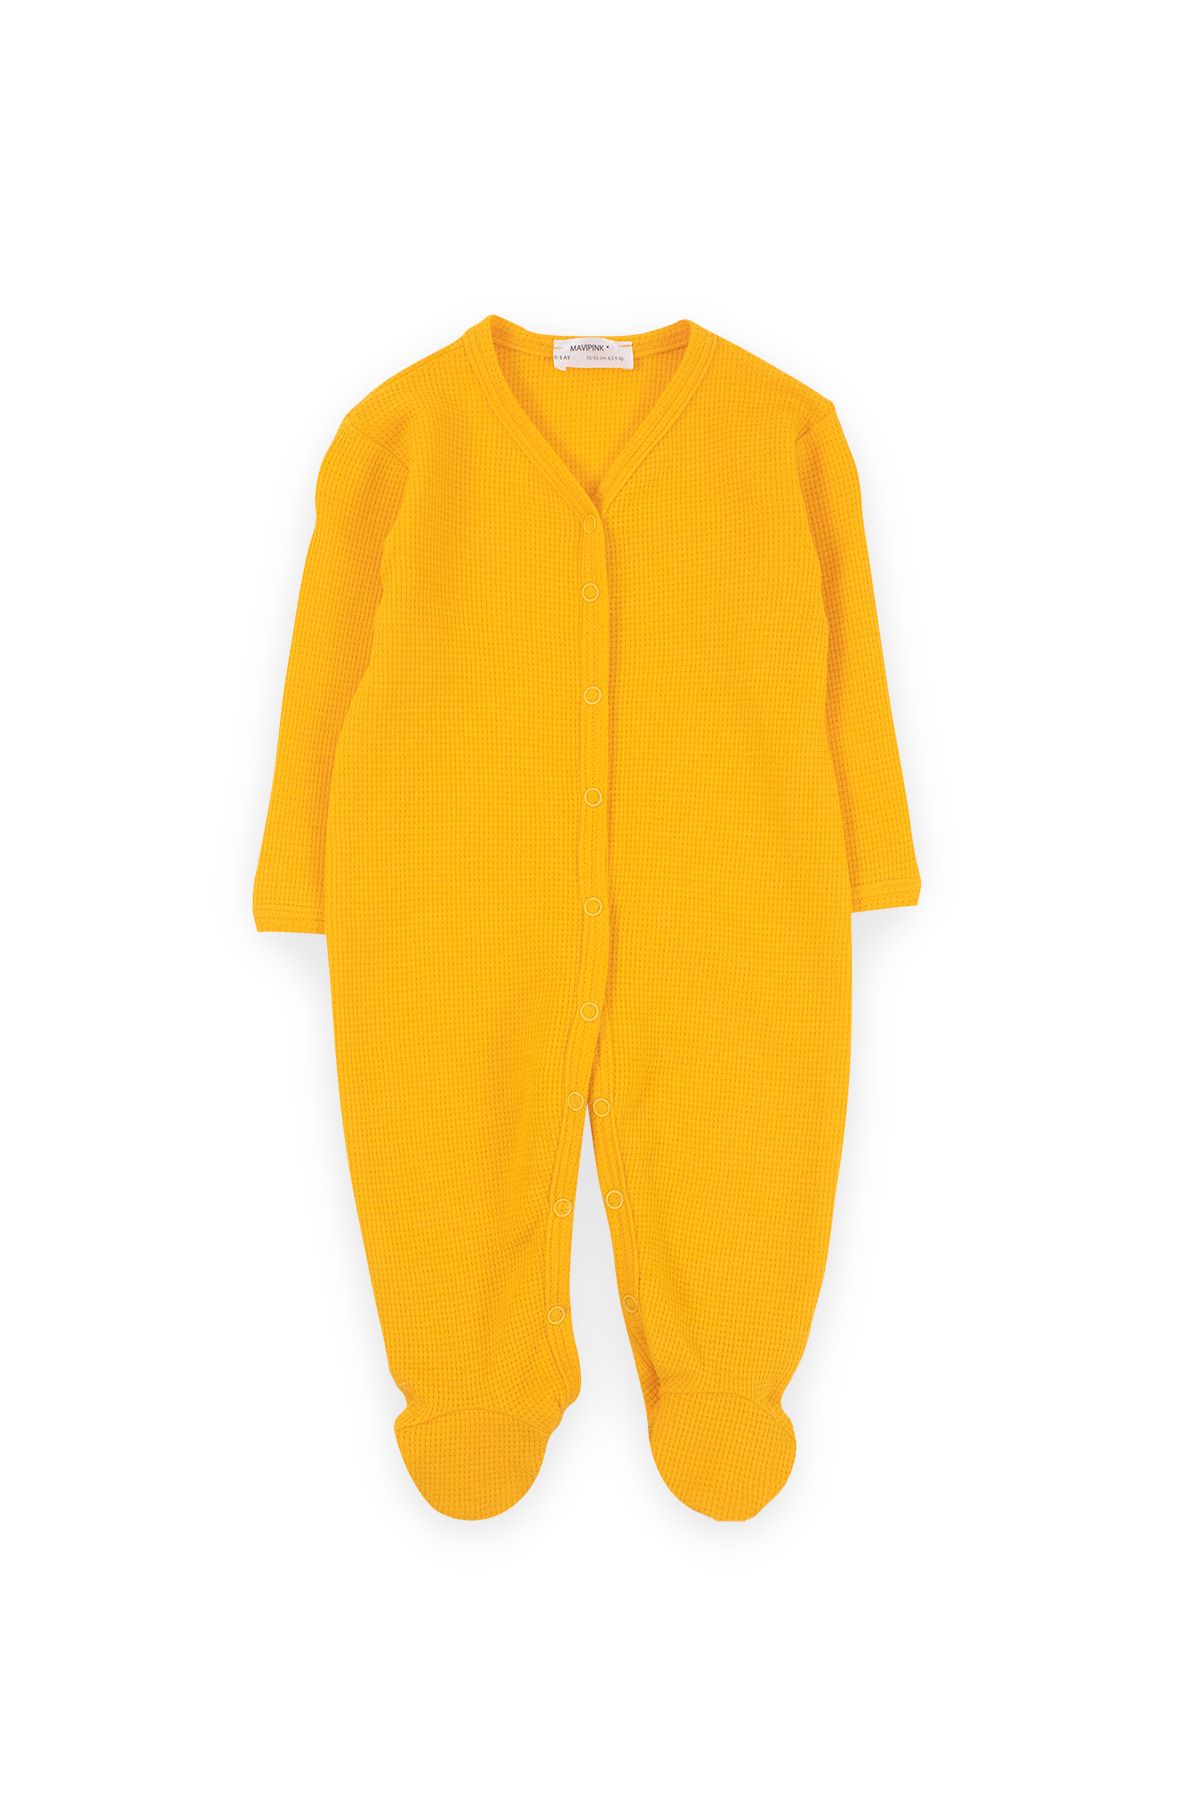 Bubuga Kız Bebek %100 Pamuk Waffle Kumaş Sarı Renk Bebek Uyku Tulumu